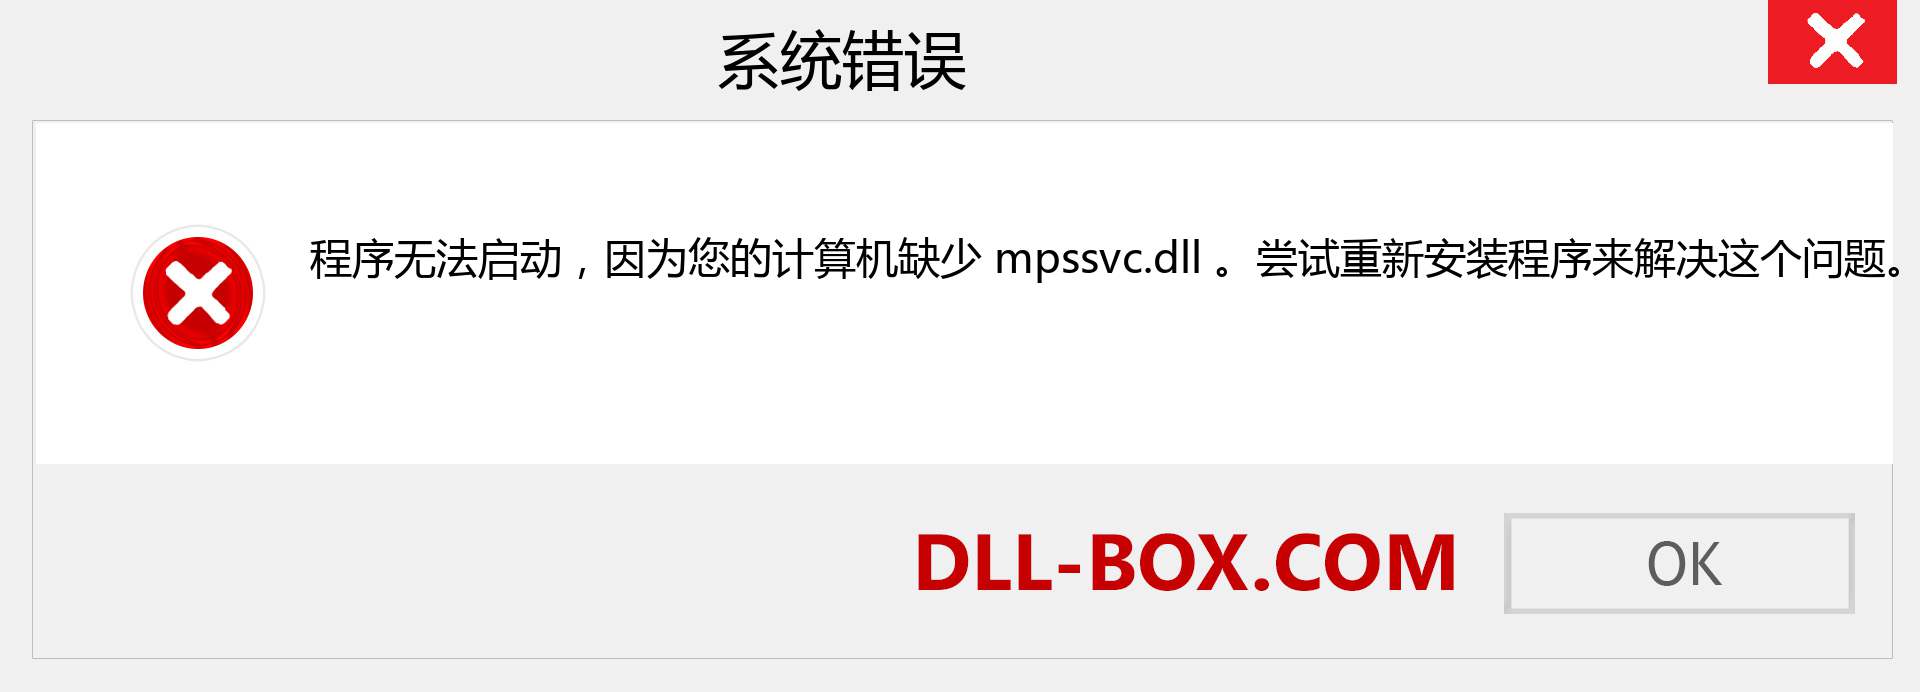 mpssvc.dll 文件丢失？。 适用于 Windows 7、8、10 的下载 - 修复 Windows、照片、图像上的 mpssvc dll 丢失错误